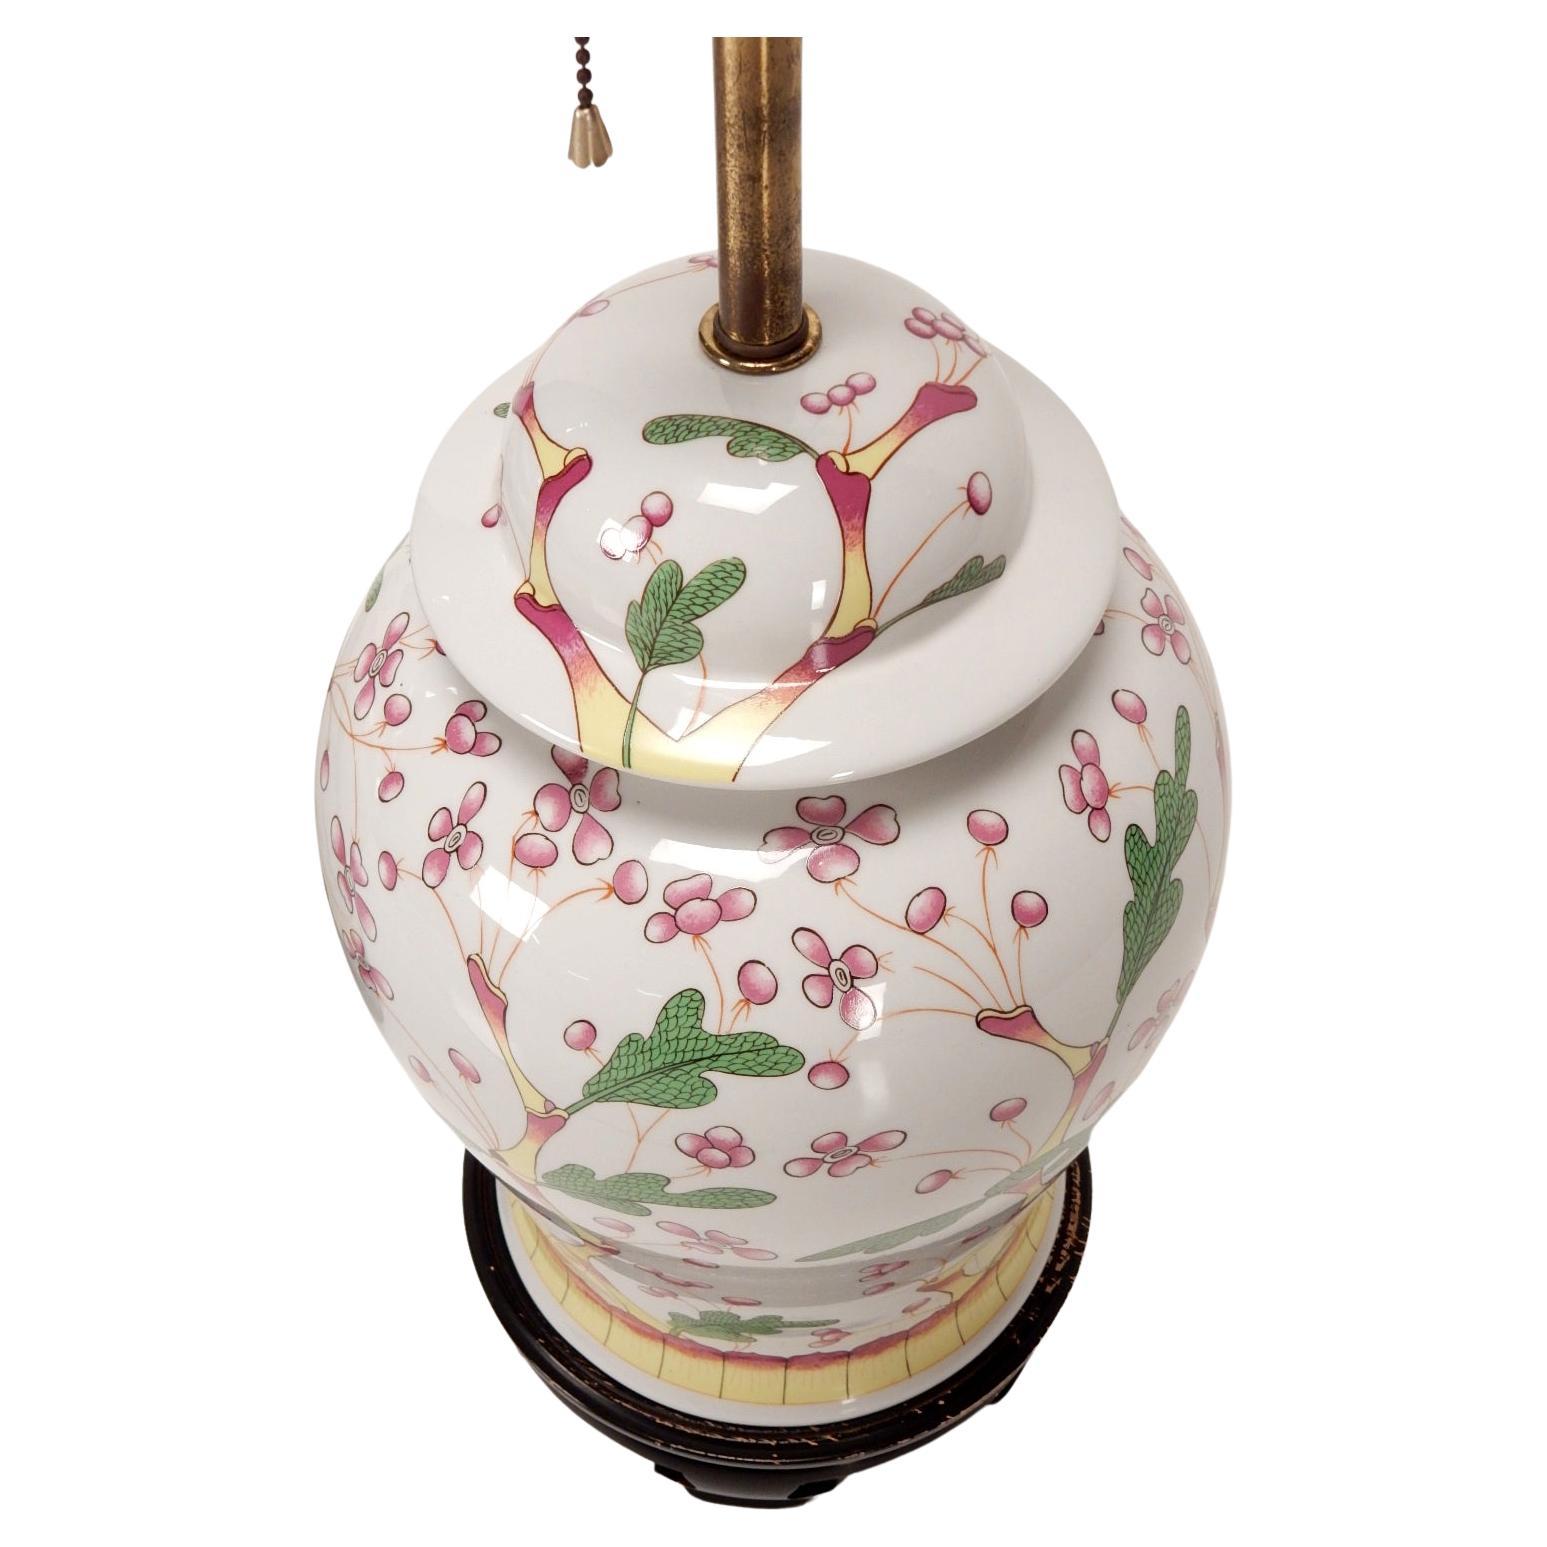 Asiatisch inspirierte Ingwer-Tischlampen aus der Mitte des Jahrhunderts von Norman Perry Lamp CO.
Große Gefäße mit Keramikdeckel auf kunstvoll lackierten Holzsockeln.
Gezeichnet 